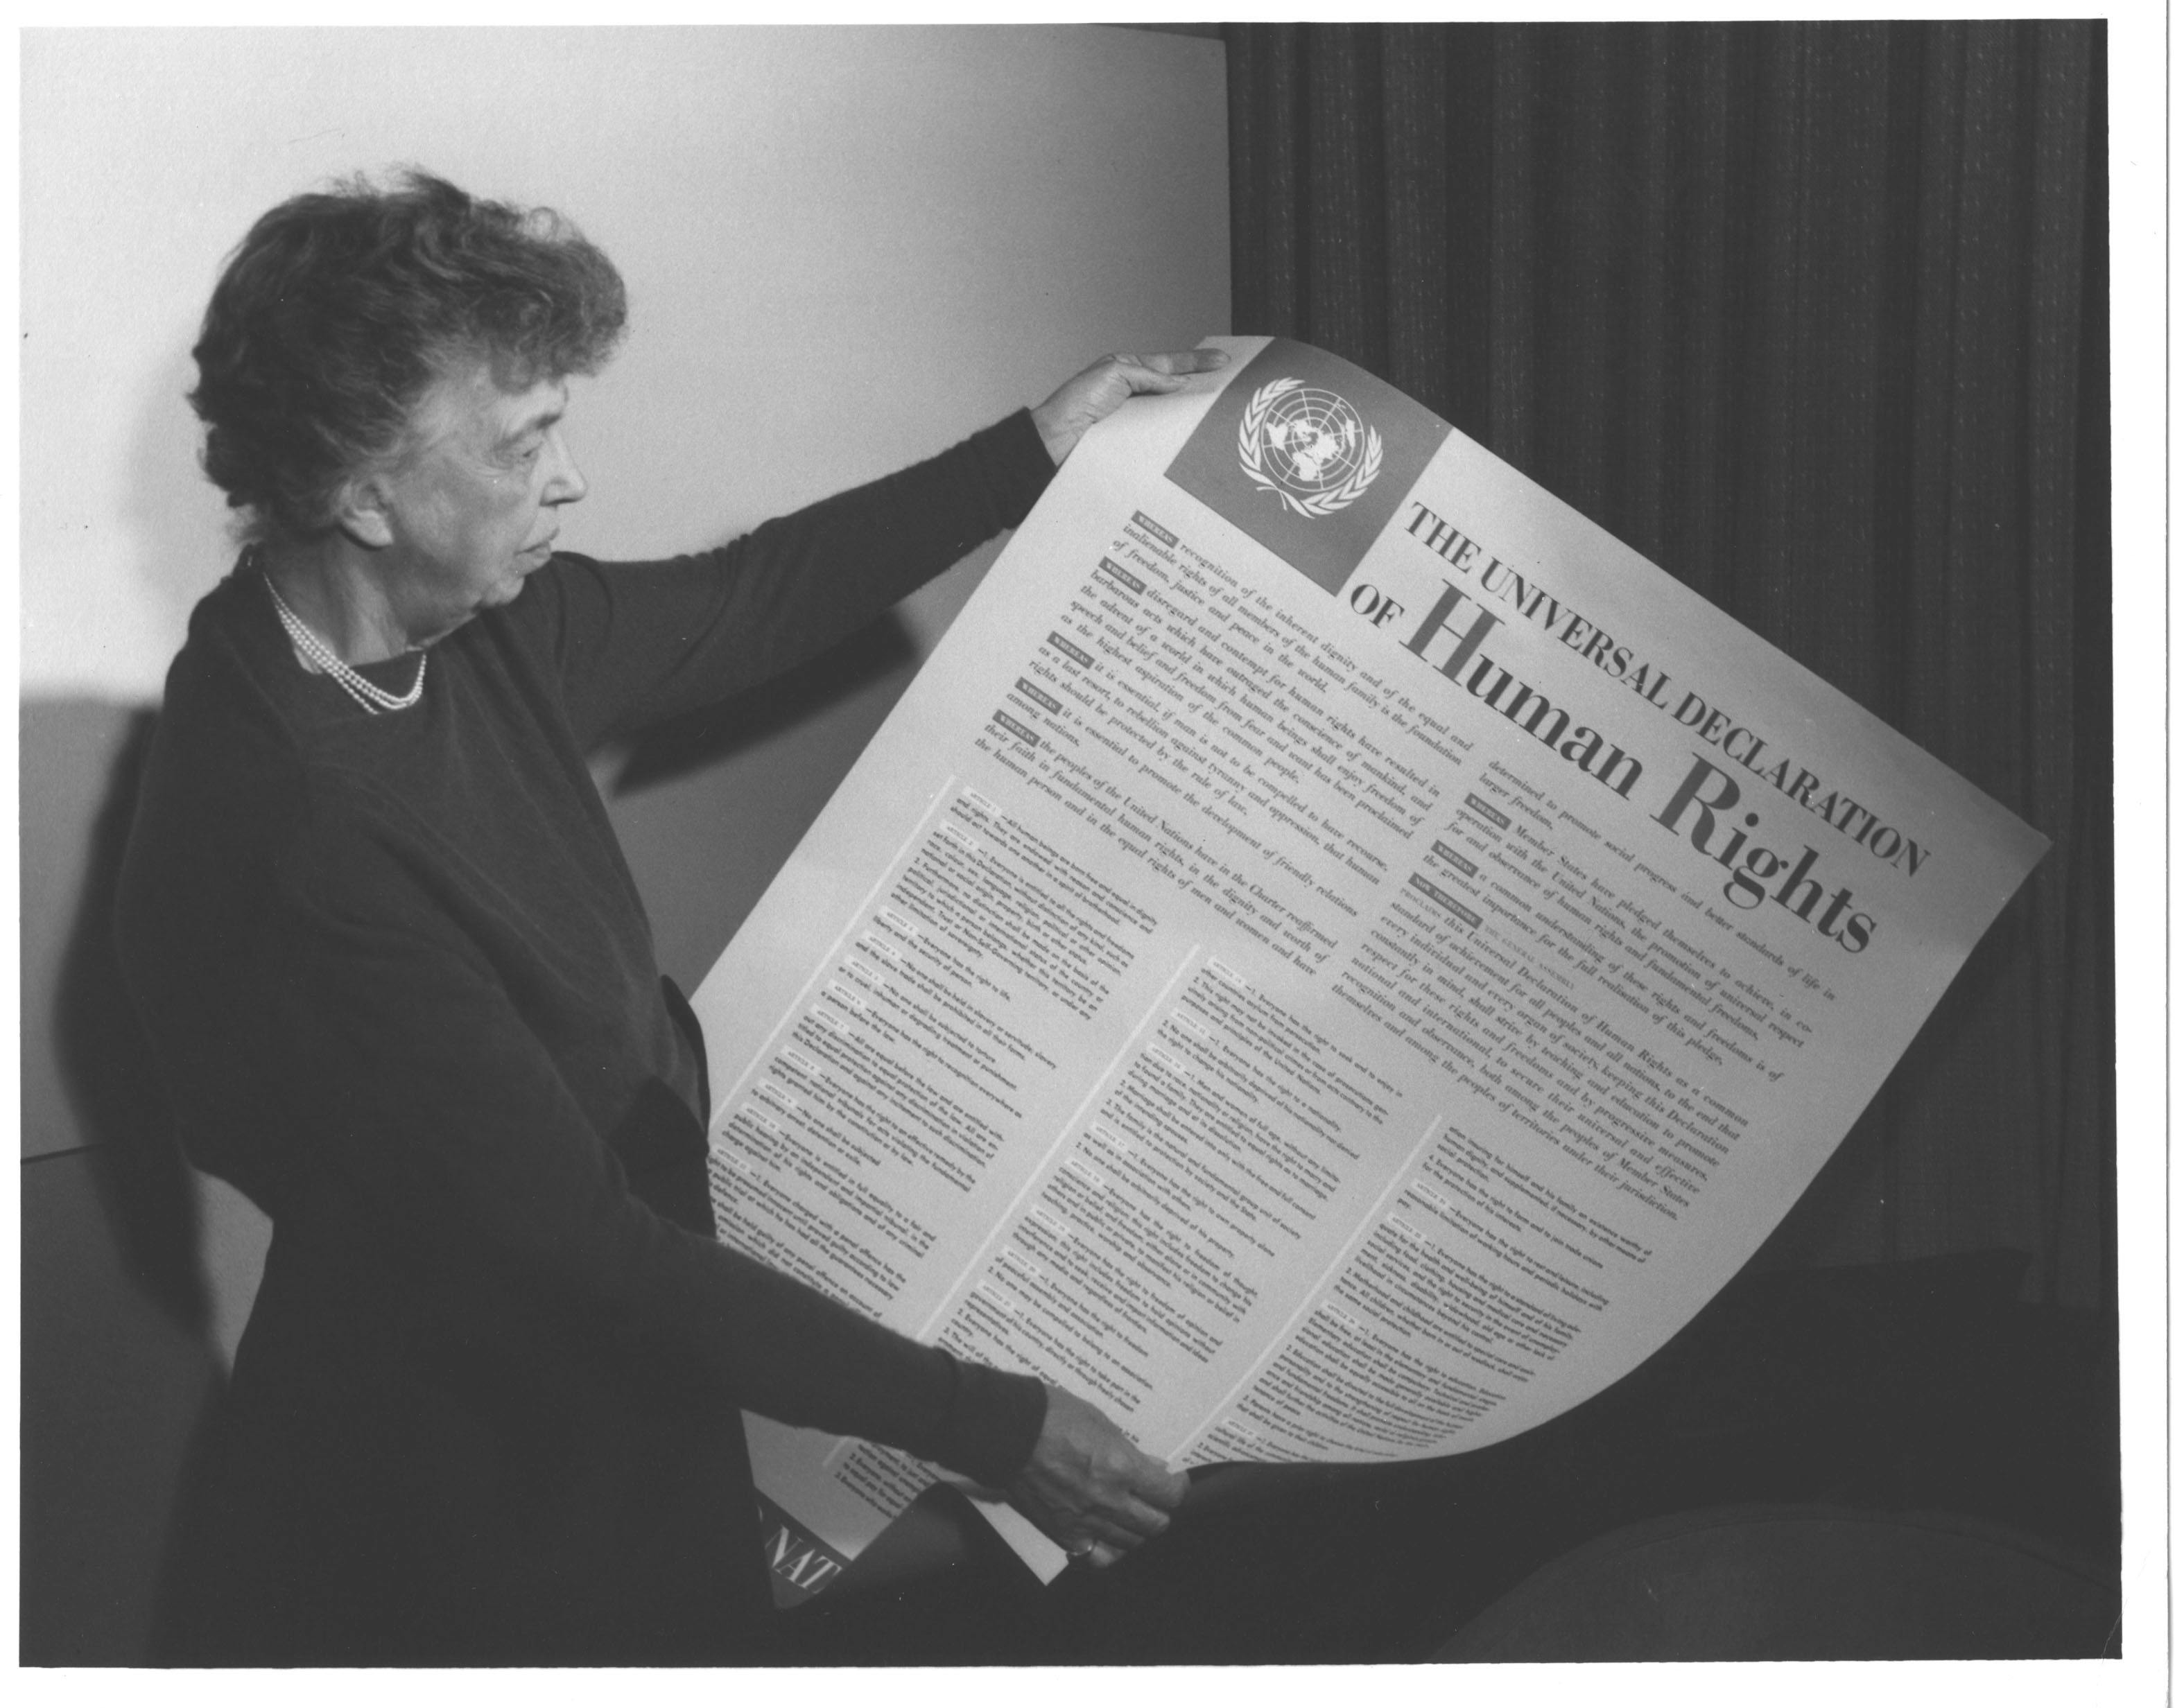 Eleanor Roosevelt et la Déclaration universelle des droits de l'homme (photo 1949)